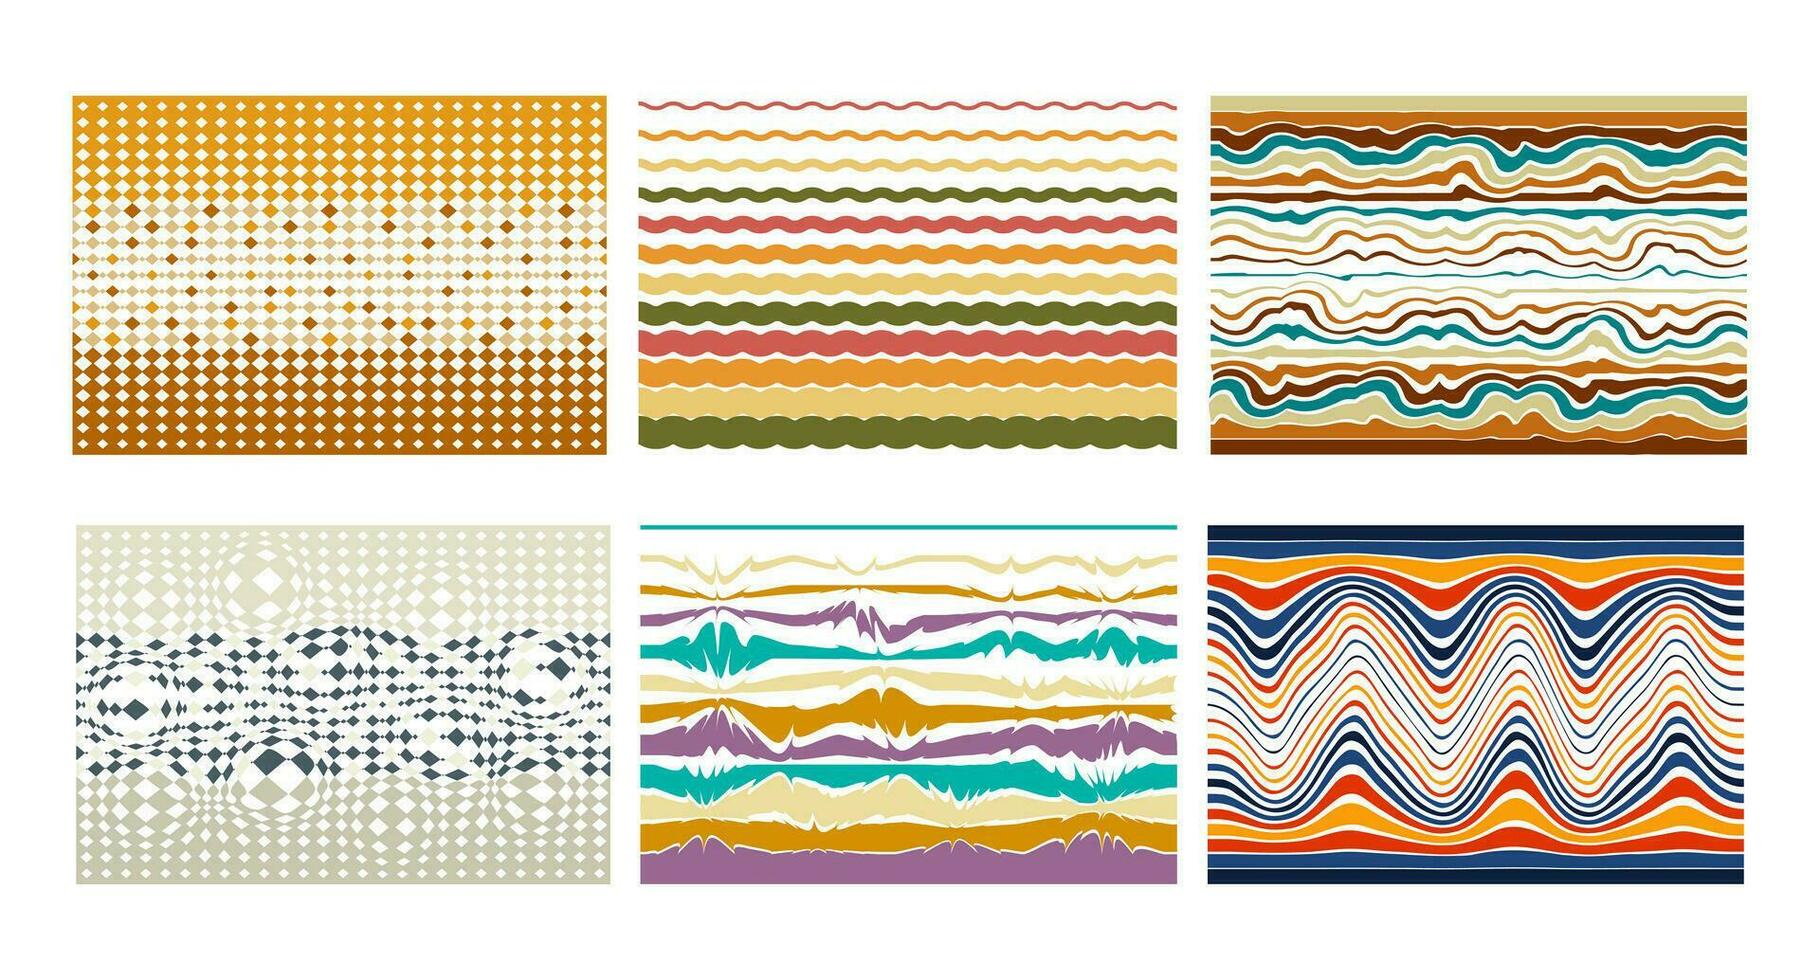 wijnoogst reeks van groovy patronen in de stijl van de jaren 70. horizontaal psychedelisch abstract achtergrond. reeks van abstract retro patronen in hippie stijl. vector illustratie.